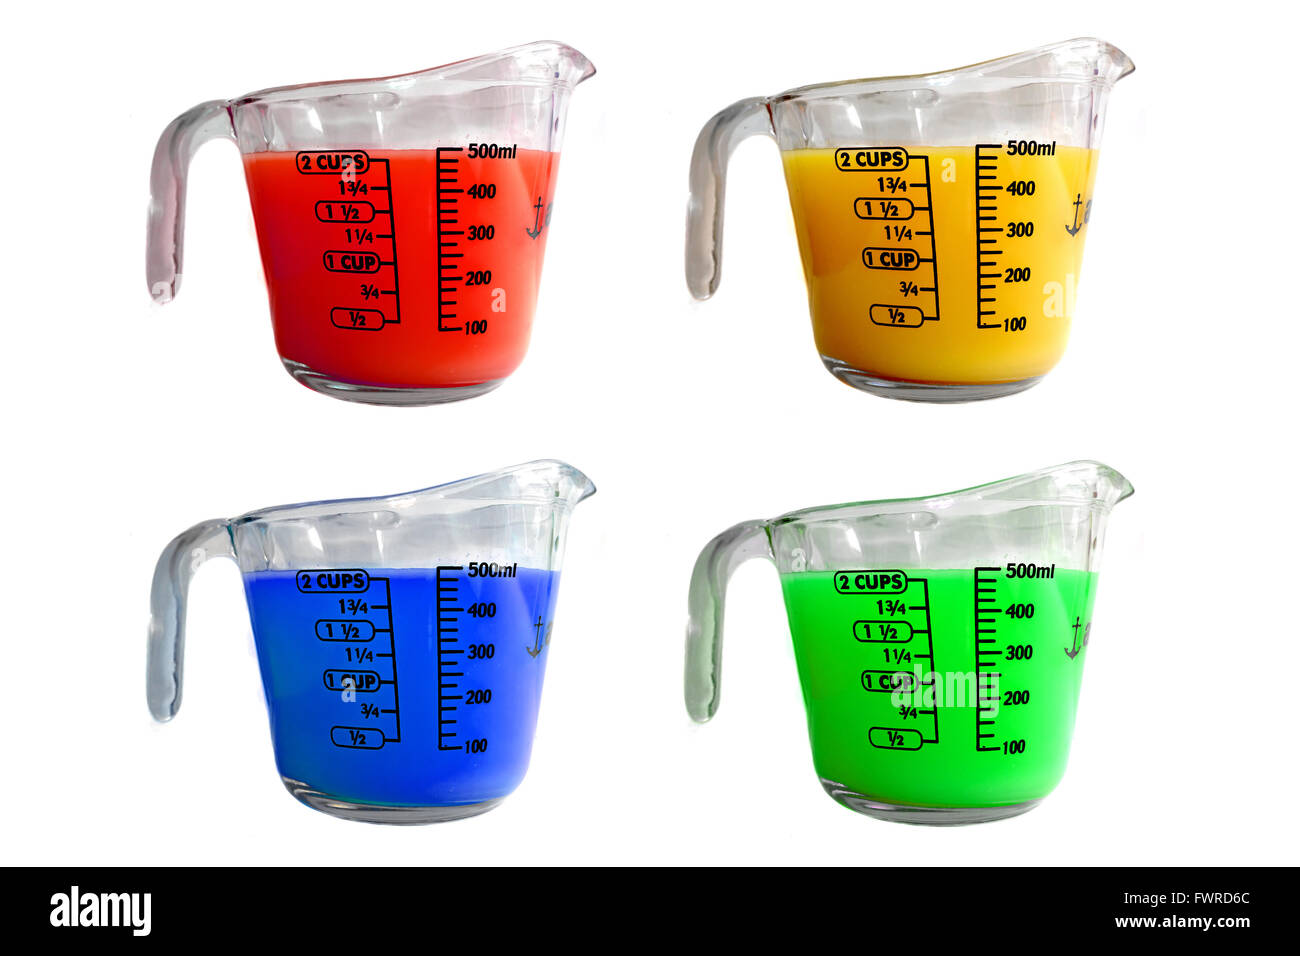 La mesure de quatre pichets remplis de liquides colorés différents photographiés sur un fond blanc. Banque D'Images